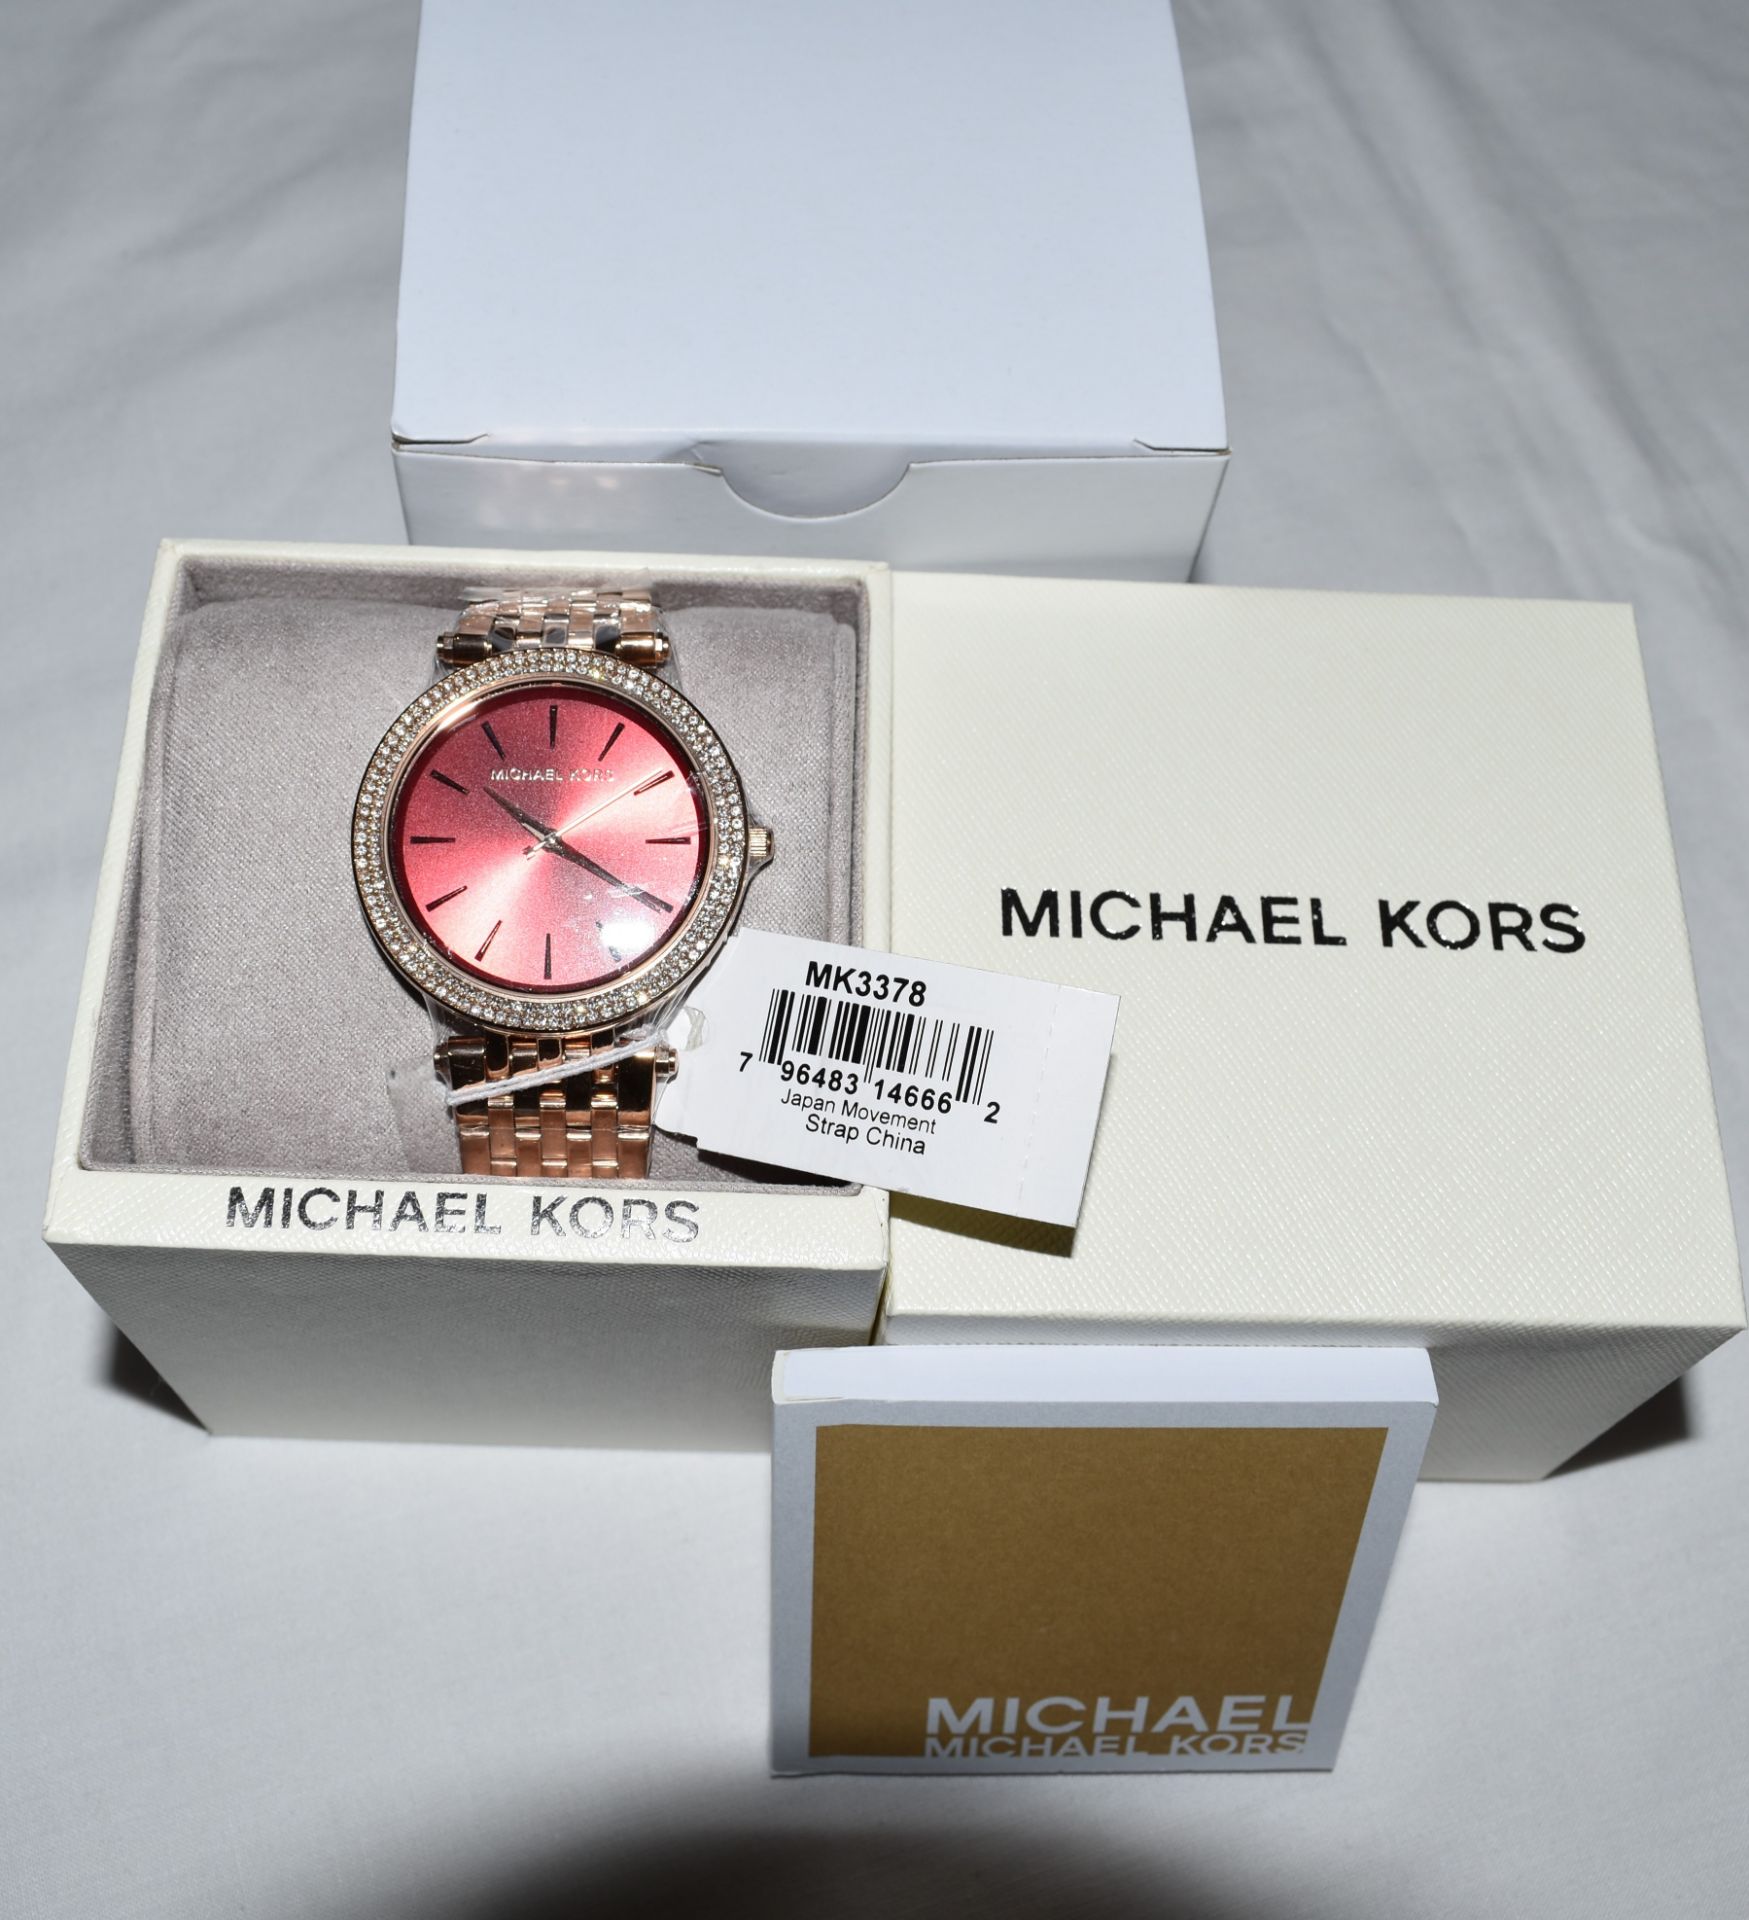 Michael Kors MK3378 Ladies Watch - Image 2 of 2